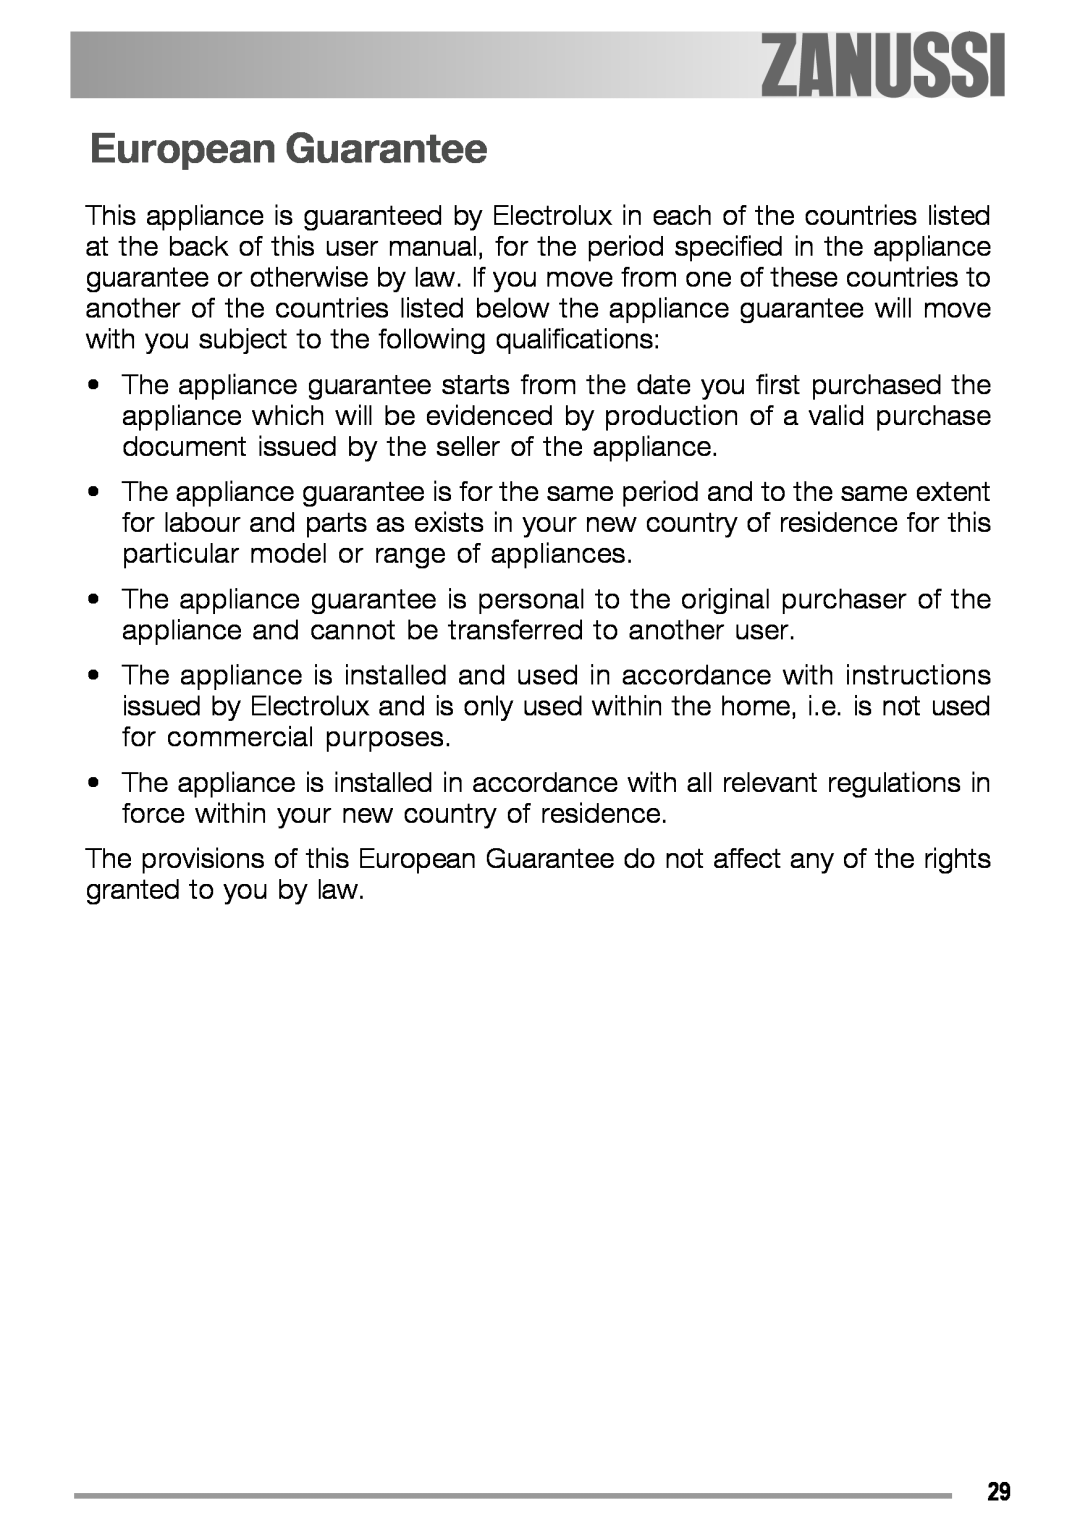 Zanussi ZGS 322 manual European Guarantee 